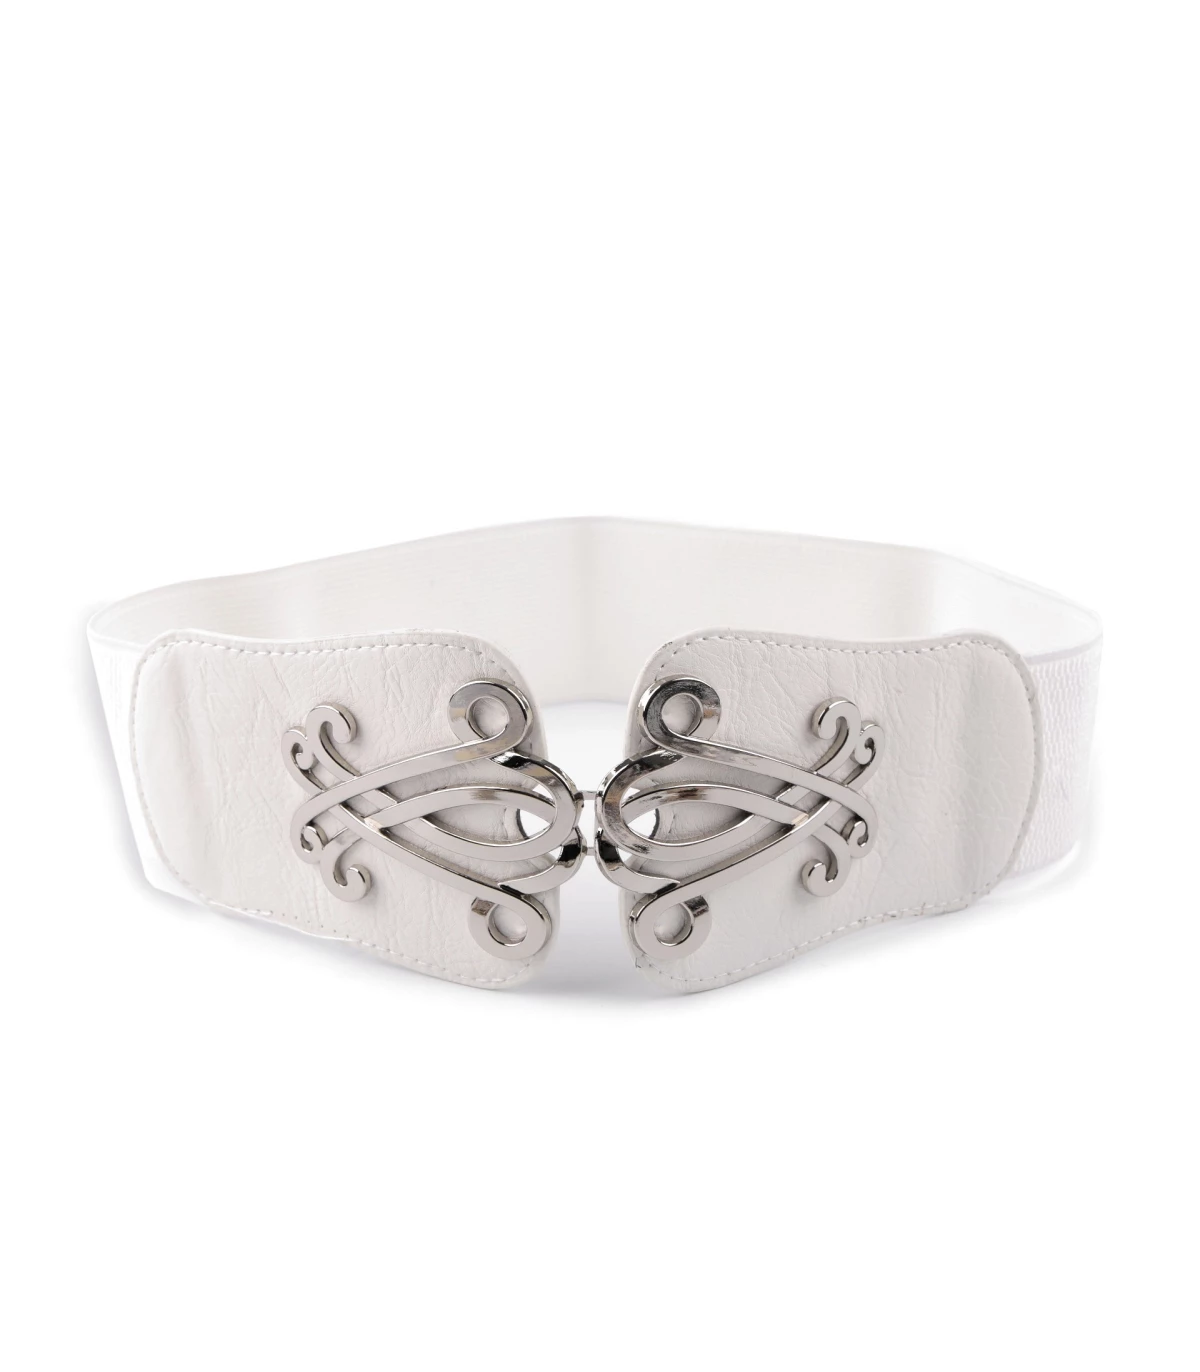 Cinturón elástico de mujer - Cinturones - Materiales tocados, Telas de calidad, Diademas, Bobinas de hilo y mas.